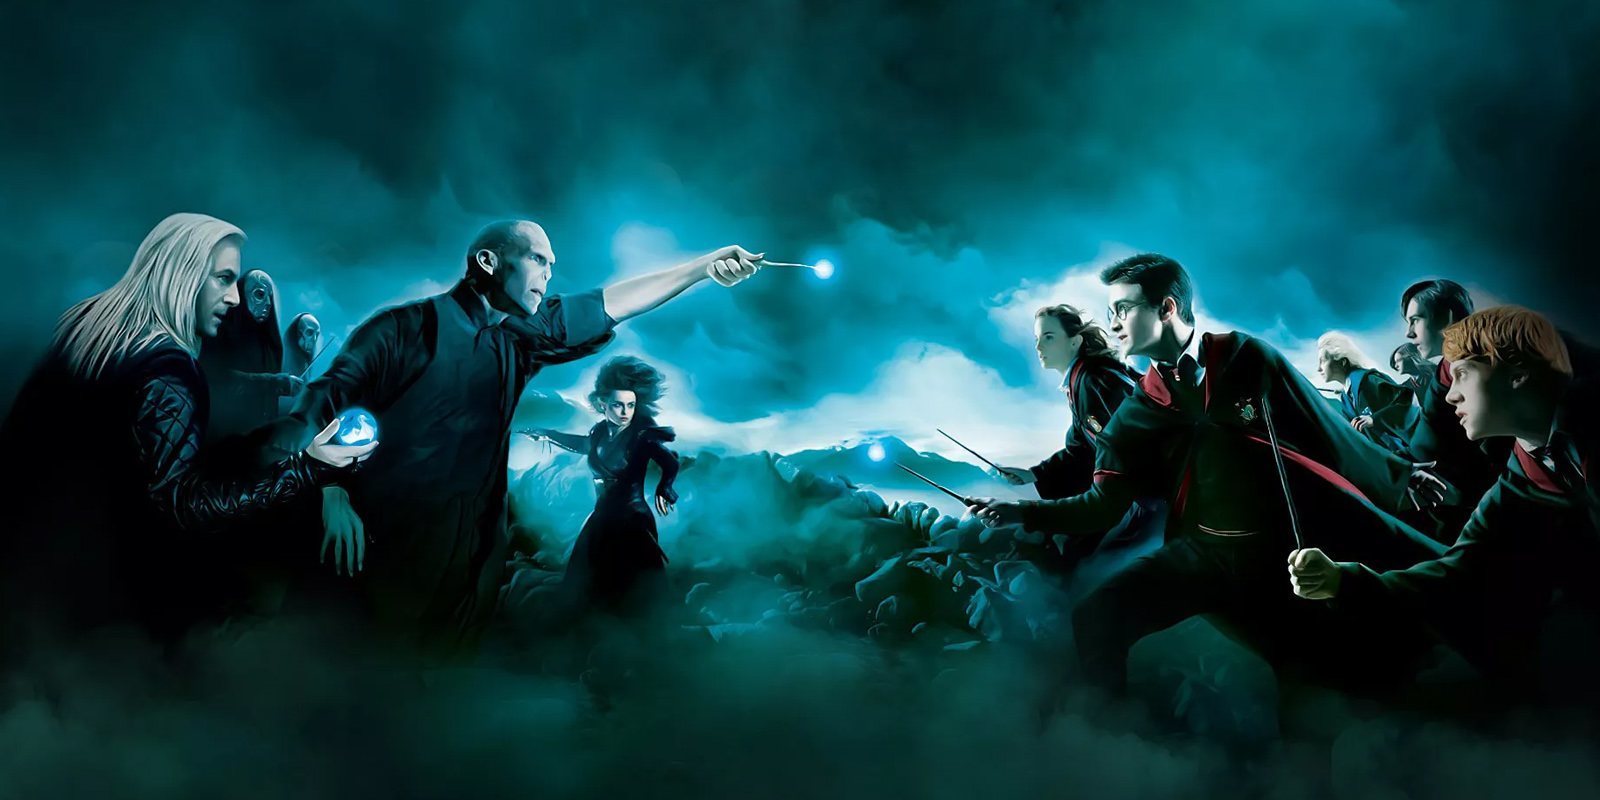 Los mortígafos llegan al mundo real con 'Harry Potter: Wizards Unite'